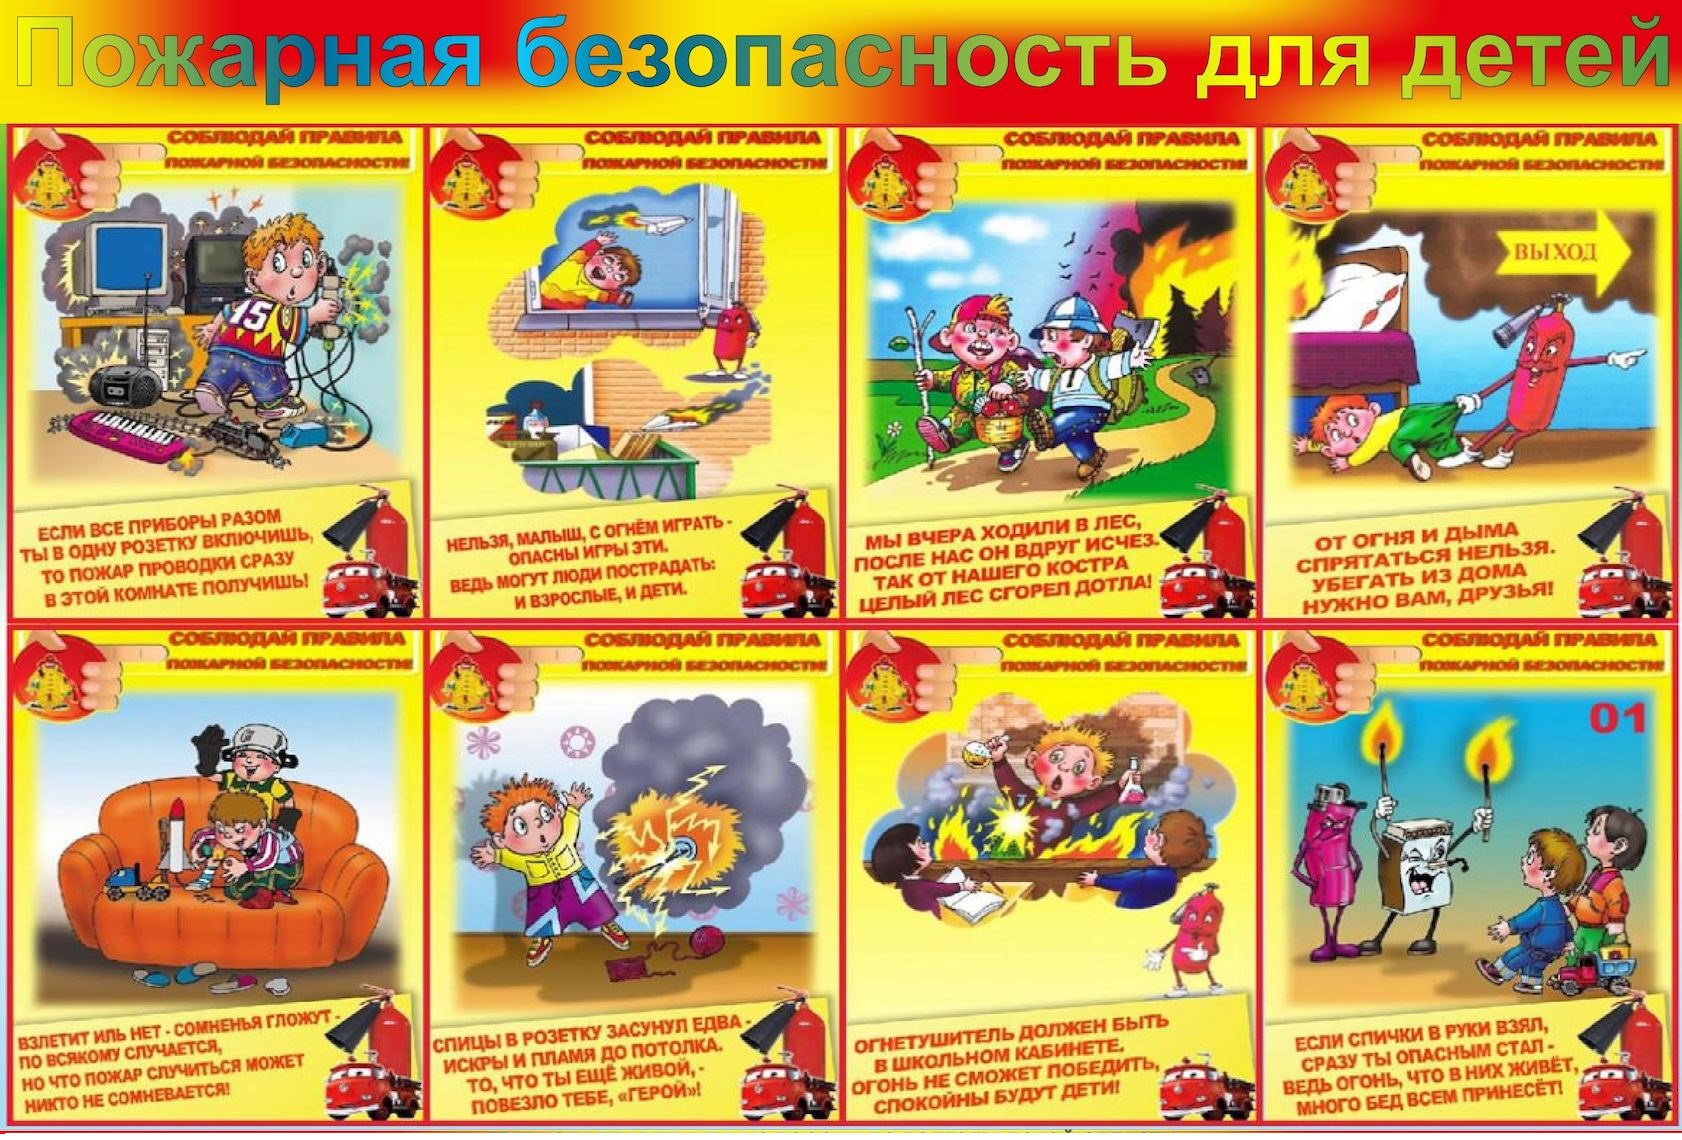 Знание правил пожарной безопасности. Памятка правил пожарной безопасности для детей. ТБ по пожарной безопасности для детей. Правила пожарной безопасноят.